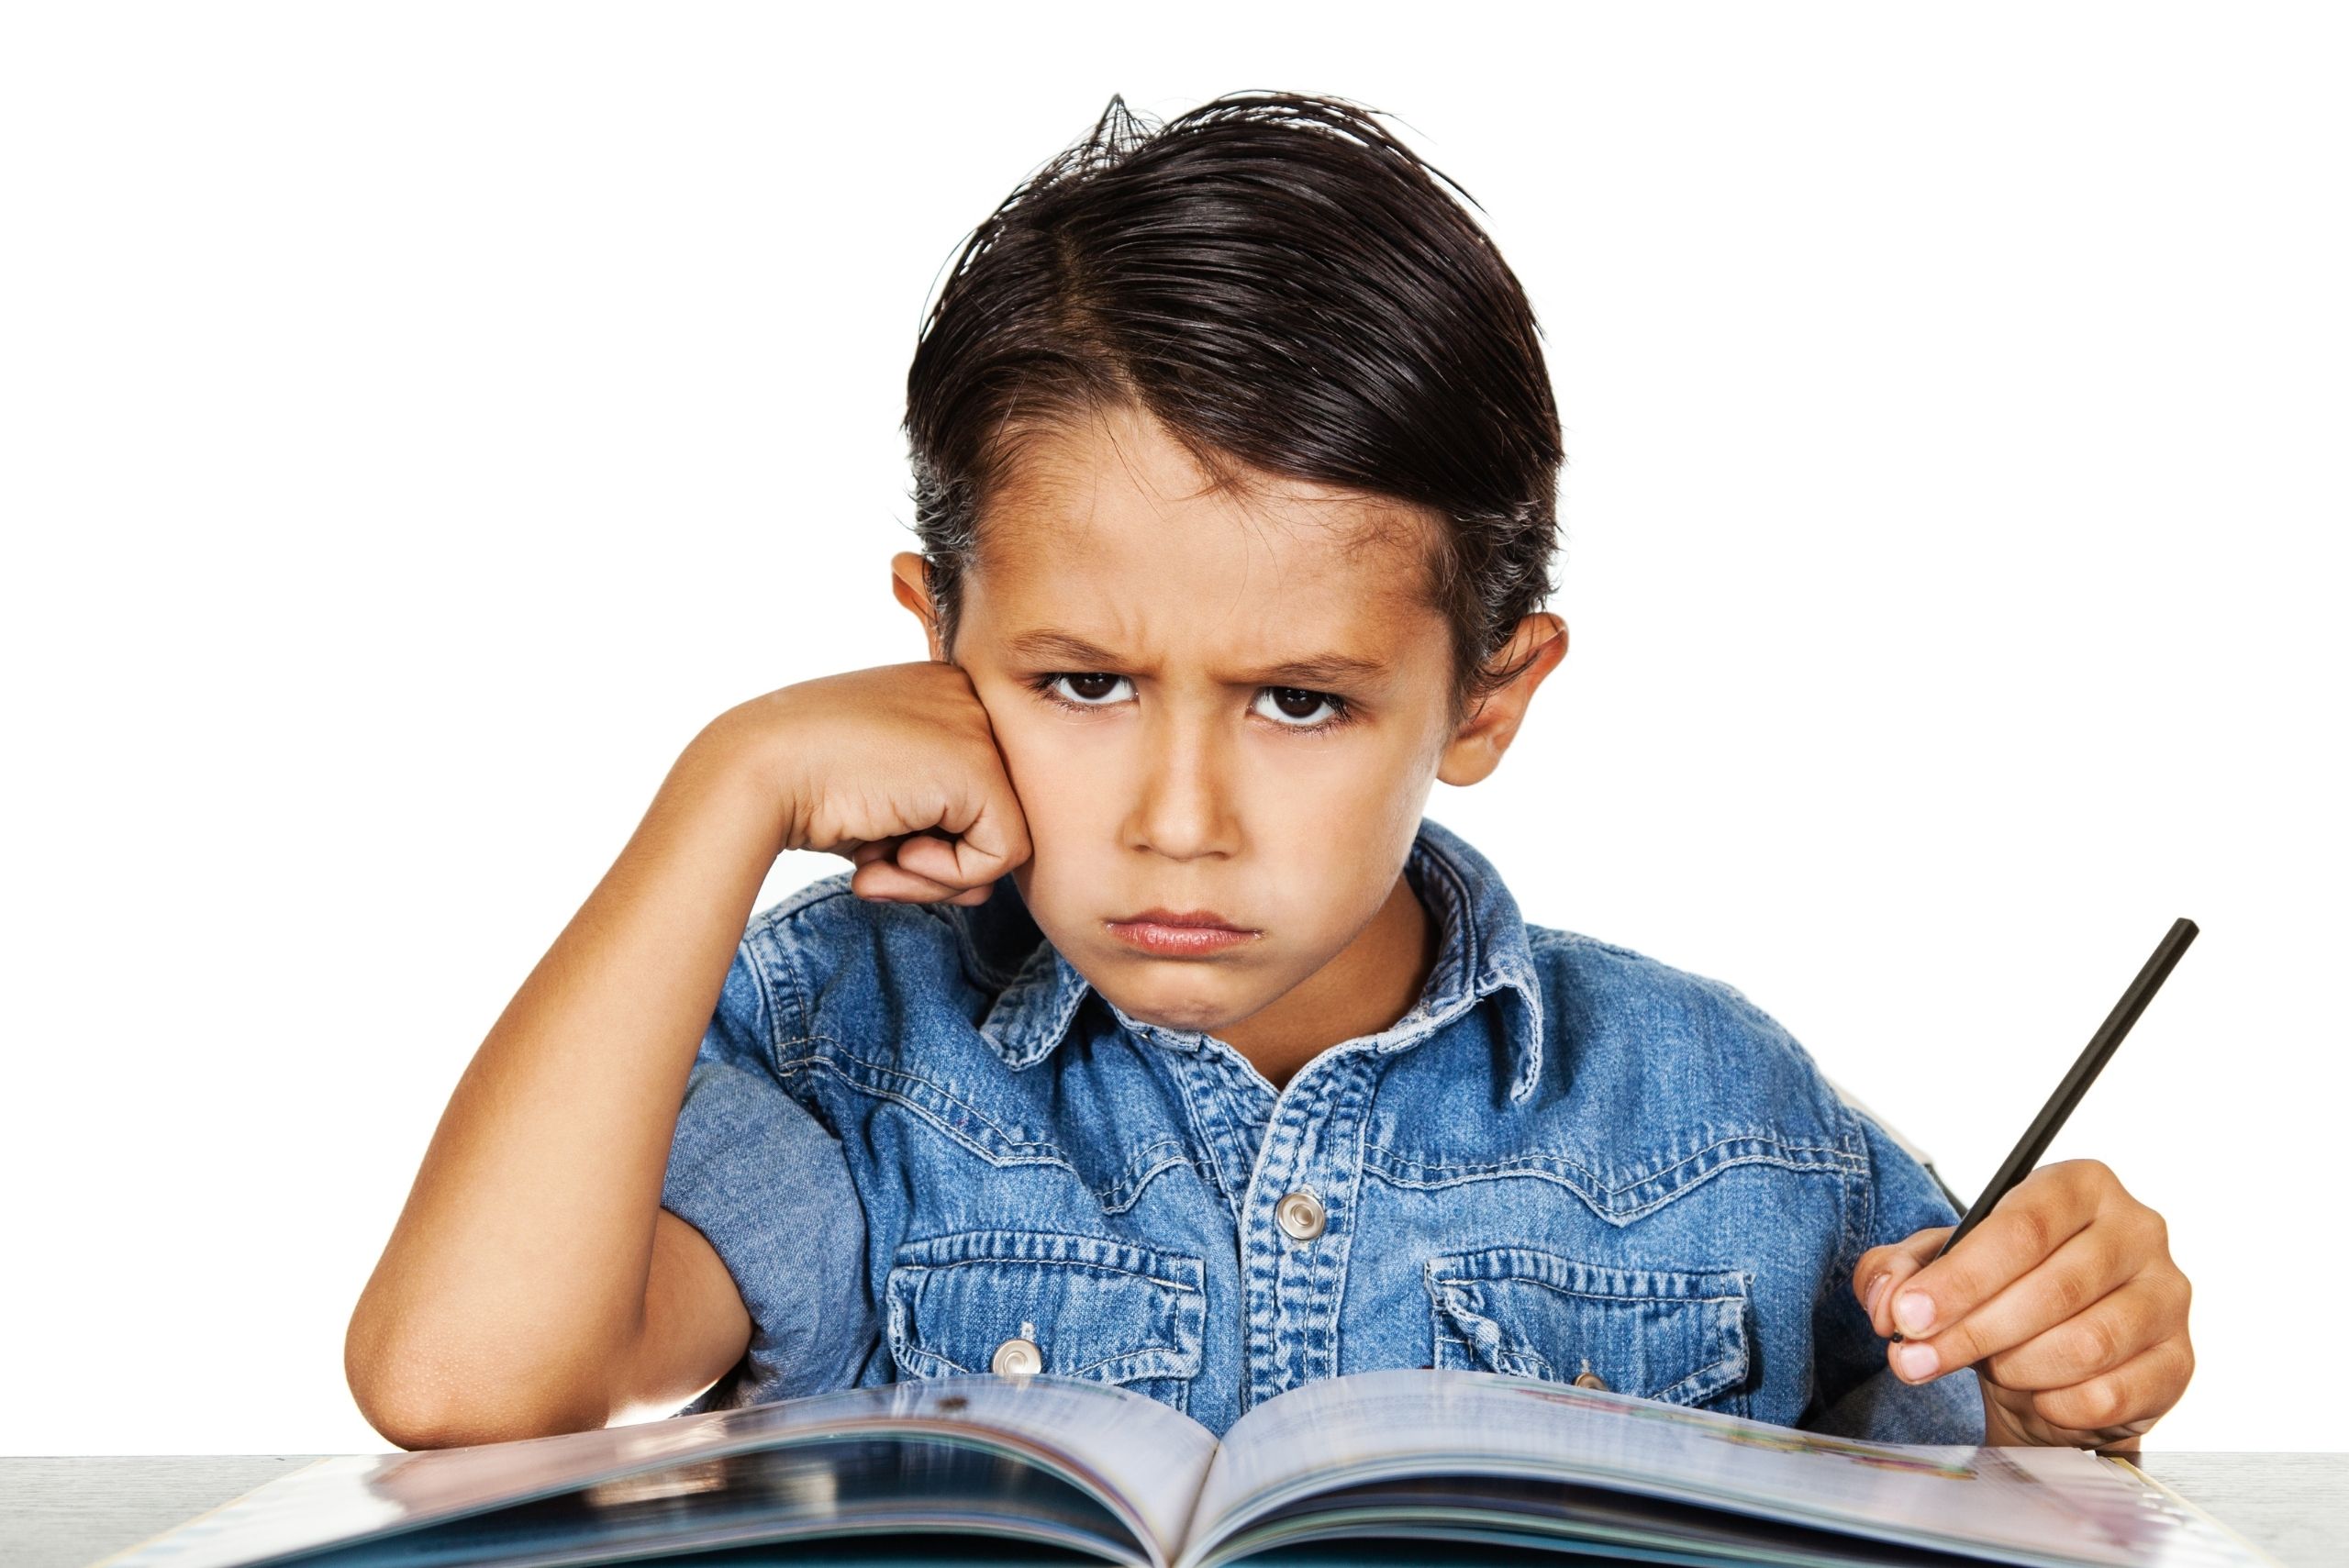 Ödevlerini Yapmak İstemeyen Çocuğuma Nasıl Davranmalıyım?